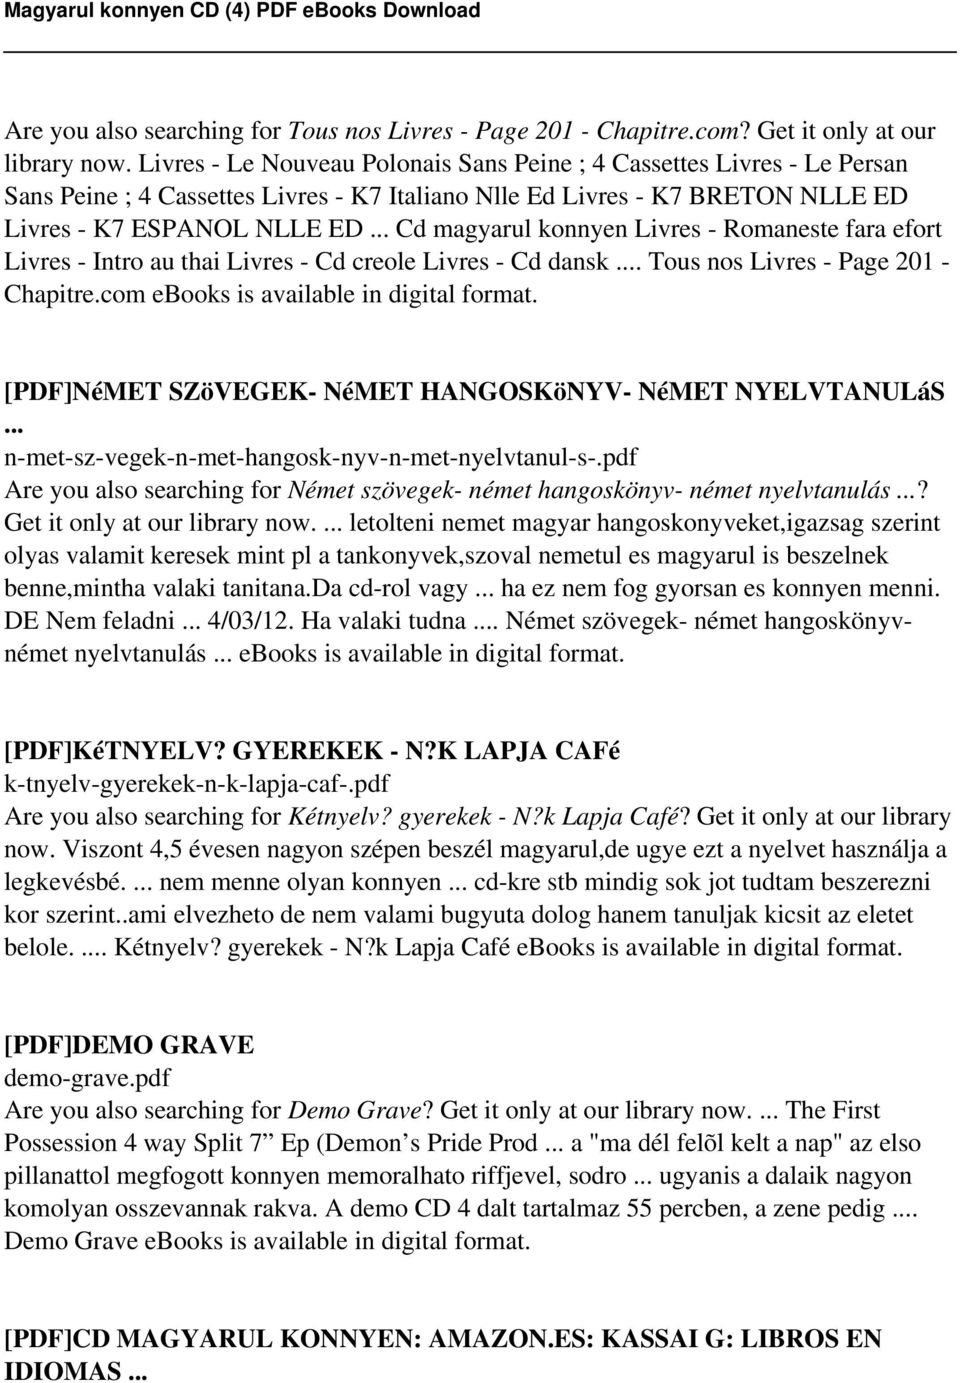 .. Cd magyarul konnyen Livres - Romaneste fara efort Livres - Intro au thai Livres - Cd creole Livres - Cd dansk... Tous nos Livres - Page 201 - Chapitre.com ebooks is available in digital format.